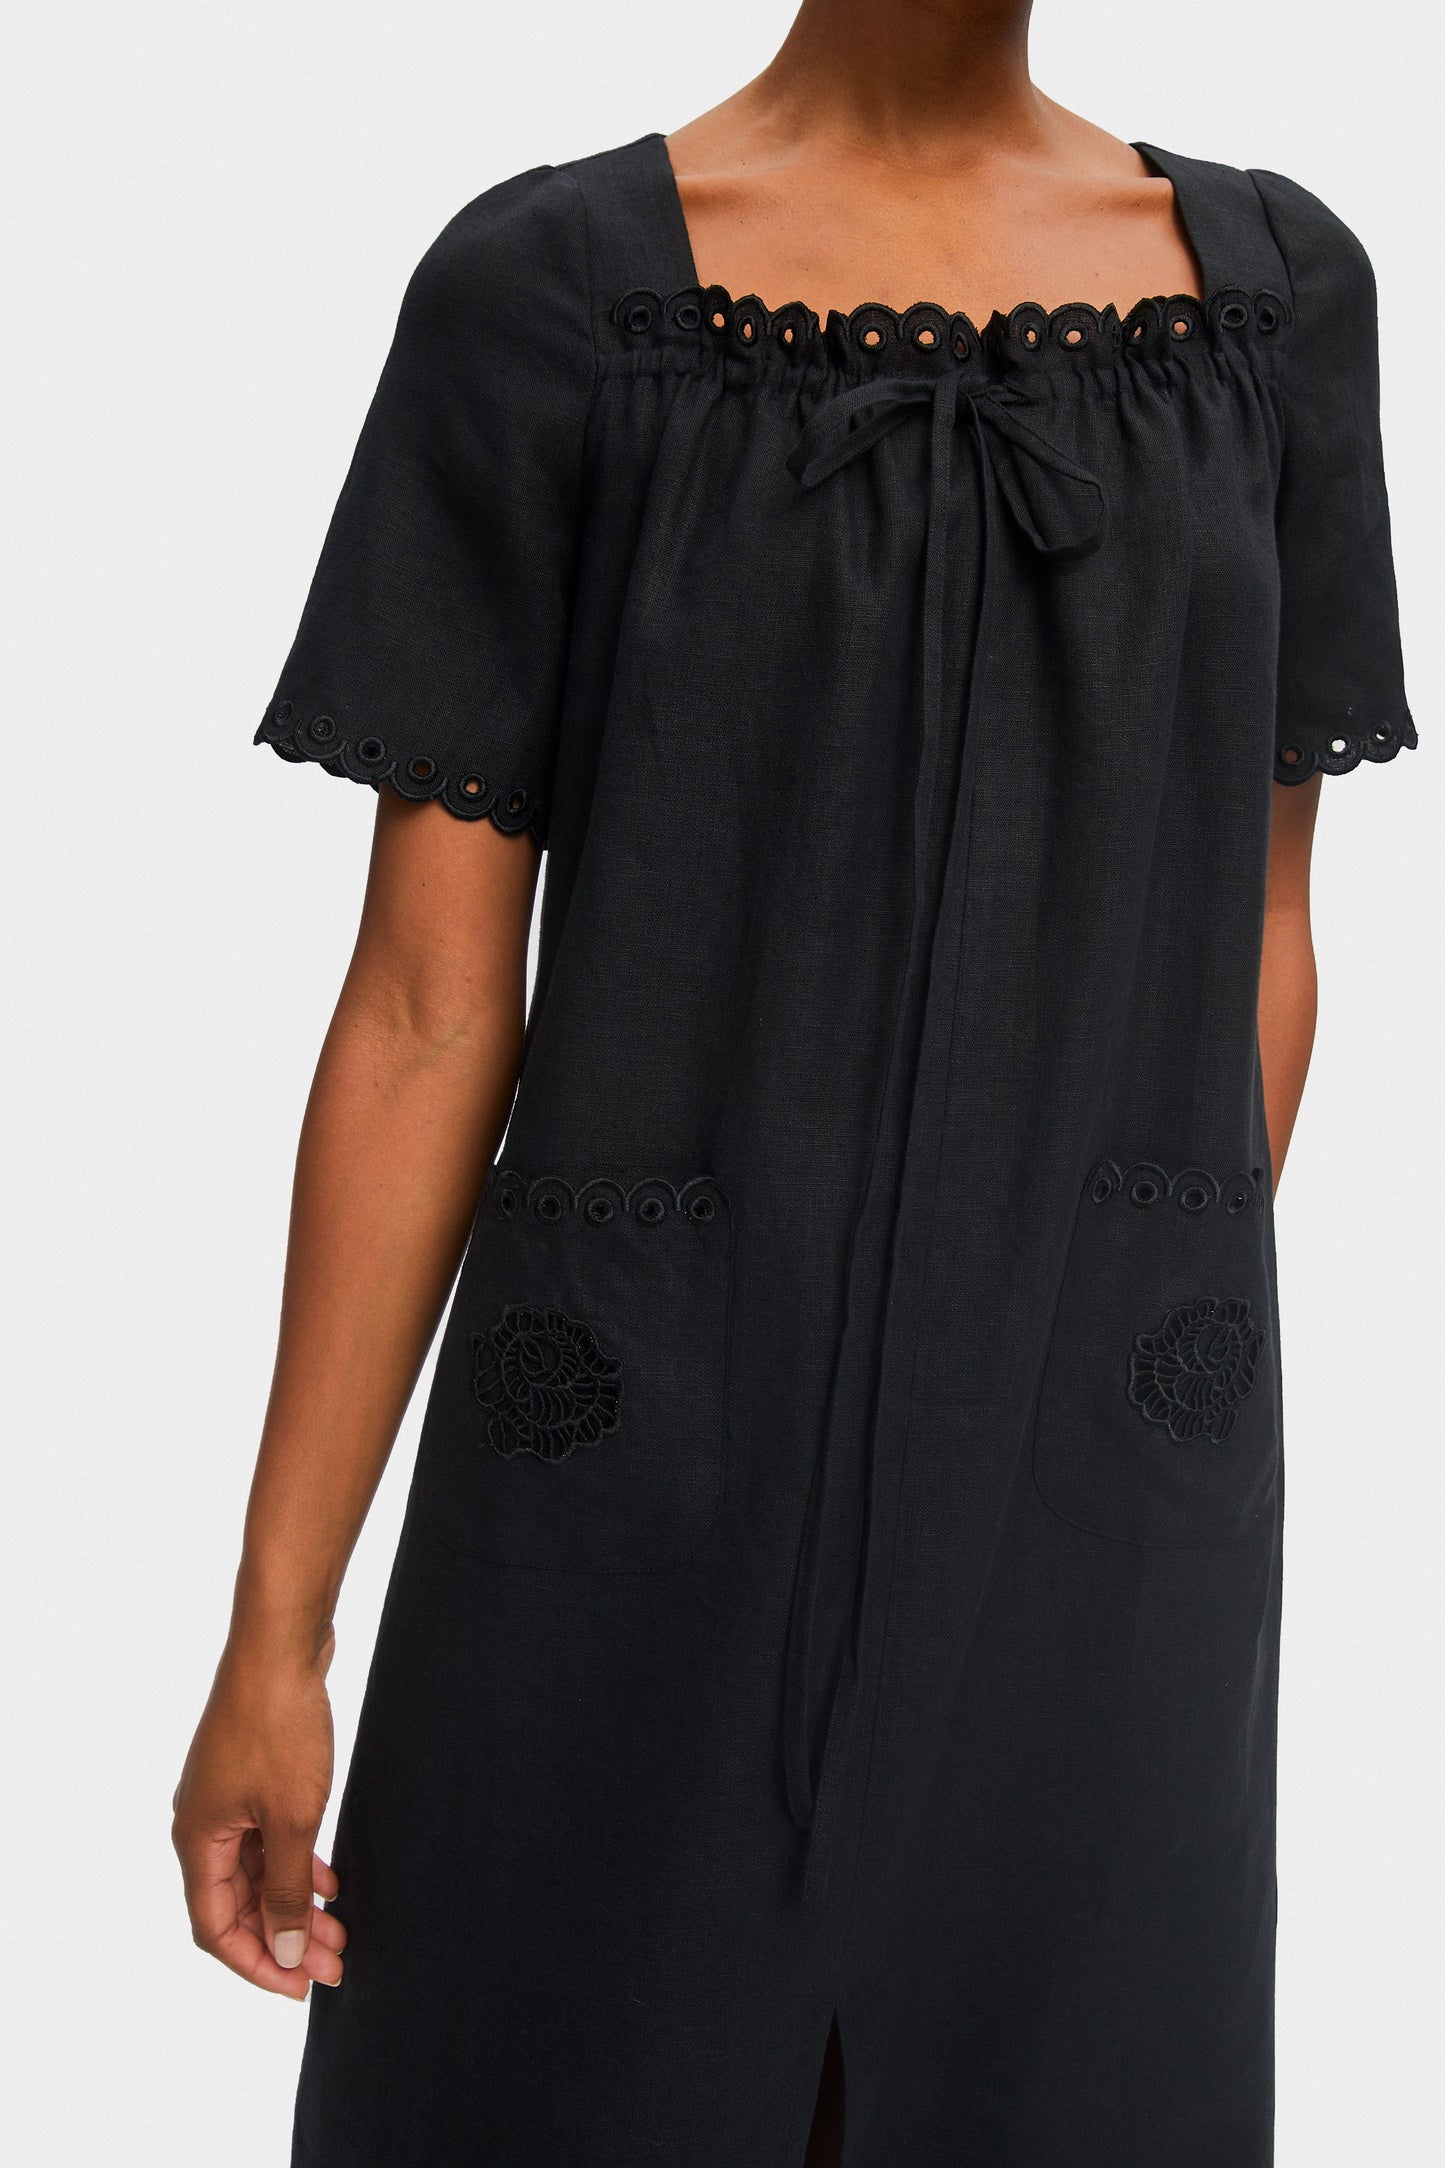 Sofia Linen Embroidered Midi Dress in Black